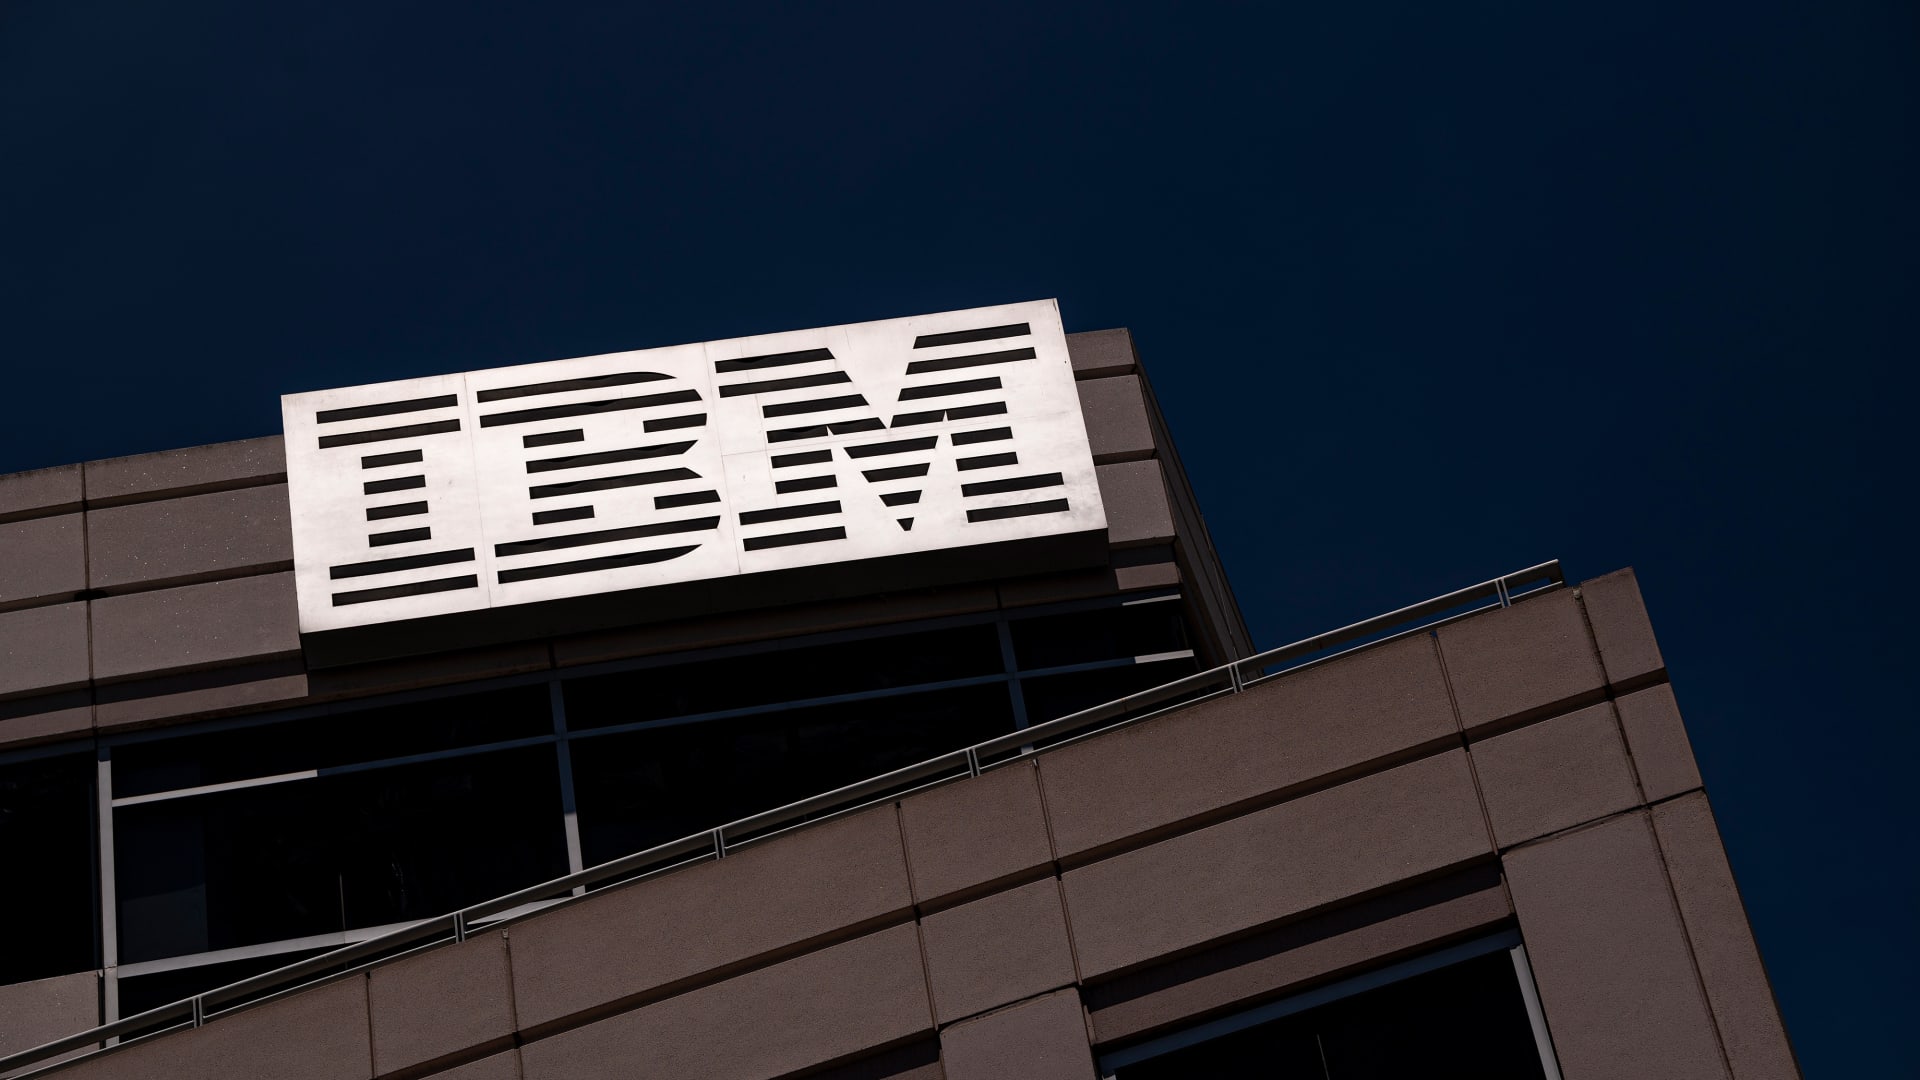 IBM:s VD tror att AI främst kommer att påverka tjänstemannayrken, men inte ersätta dem